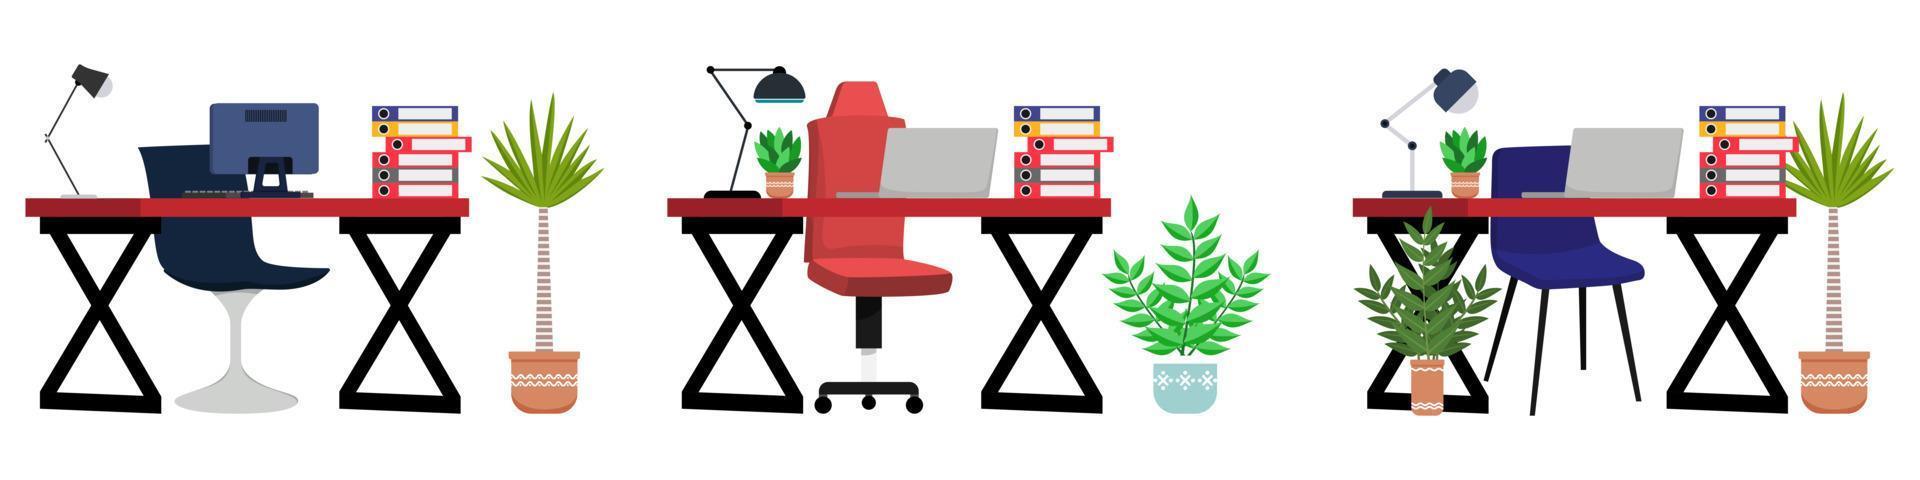 Joli beau bureau à domicile moderne avec table de chaise, lampe de table pour ordinateur portable et un dossier en papier et avec un ensemble de bureau pour plantes d'intérieur vecteur